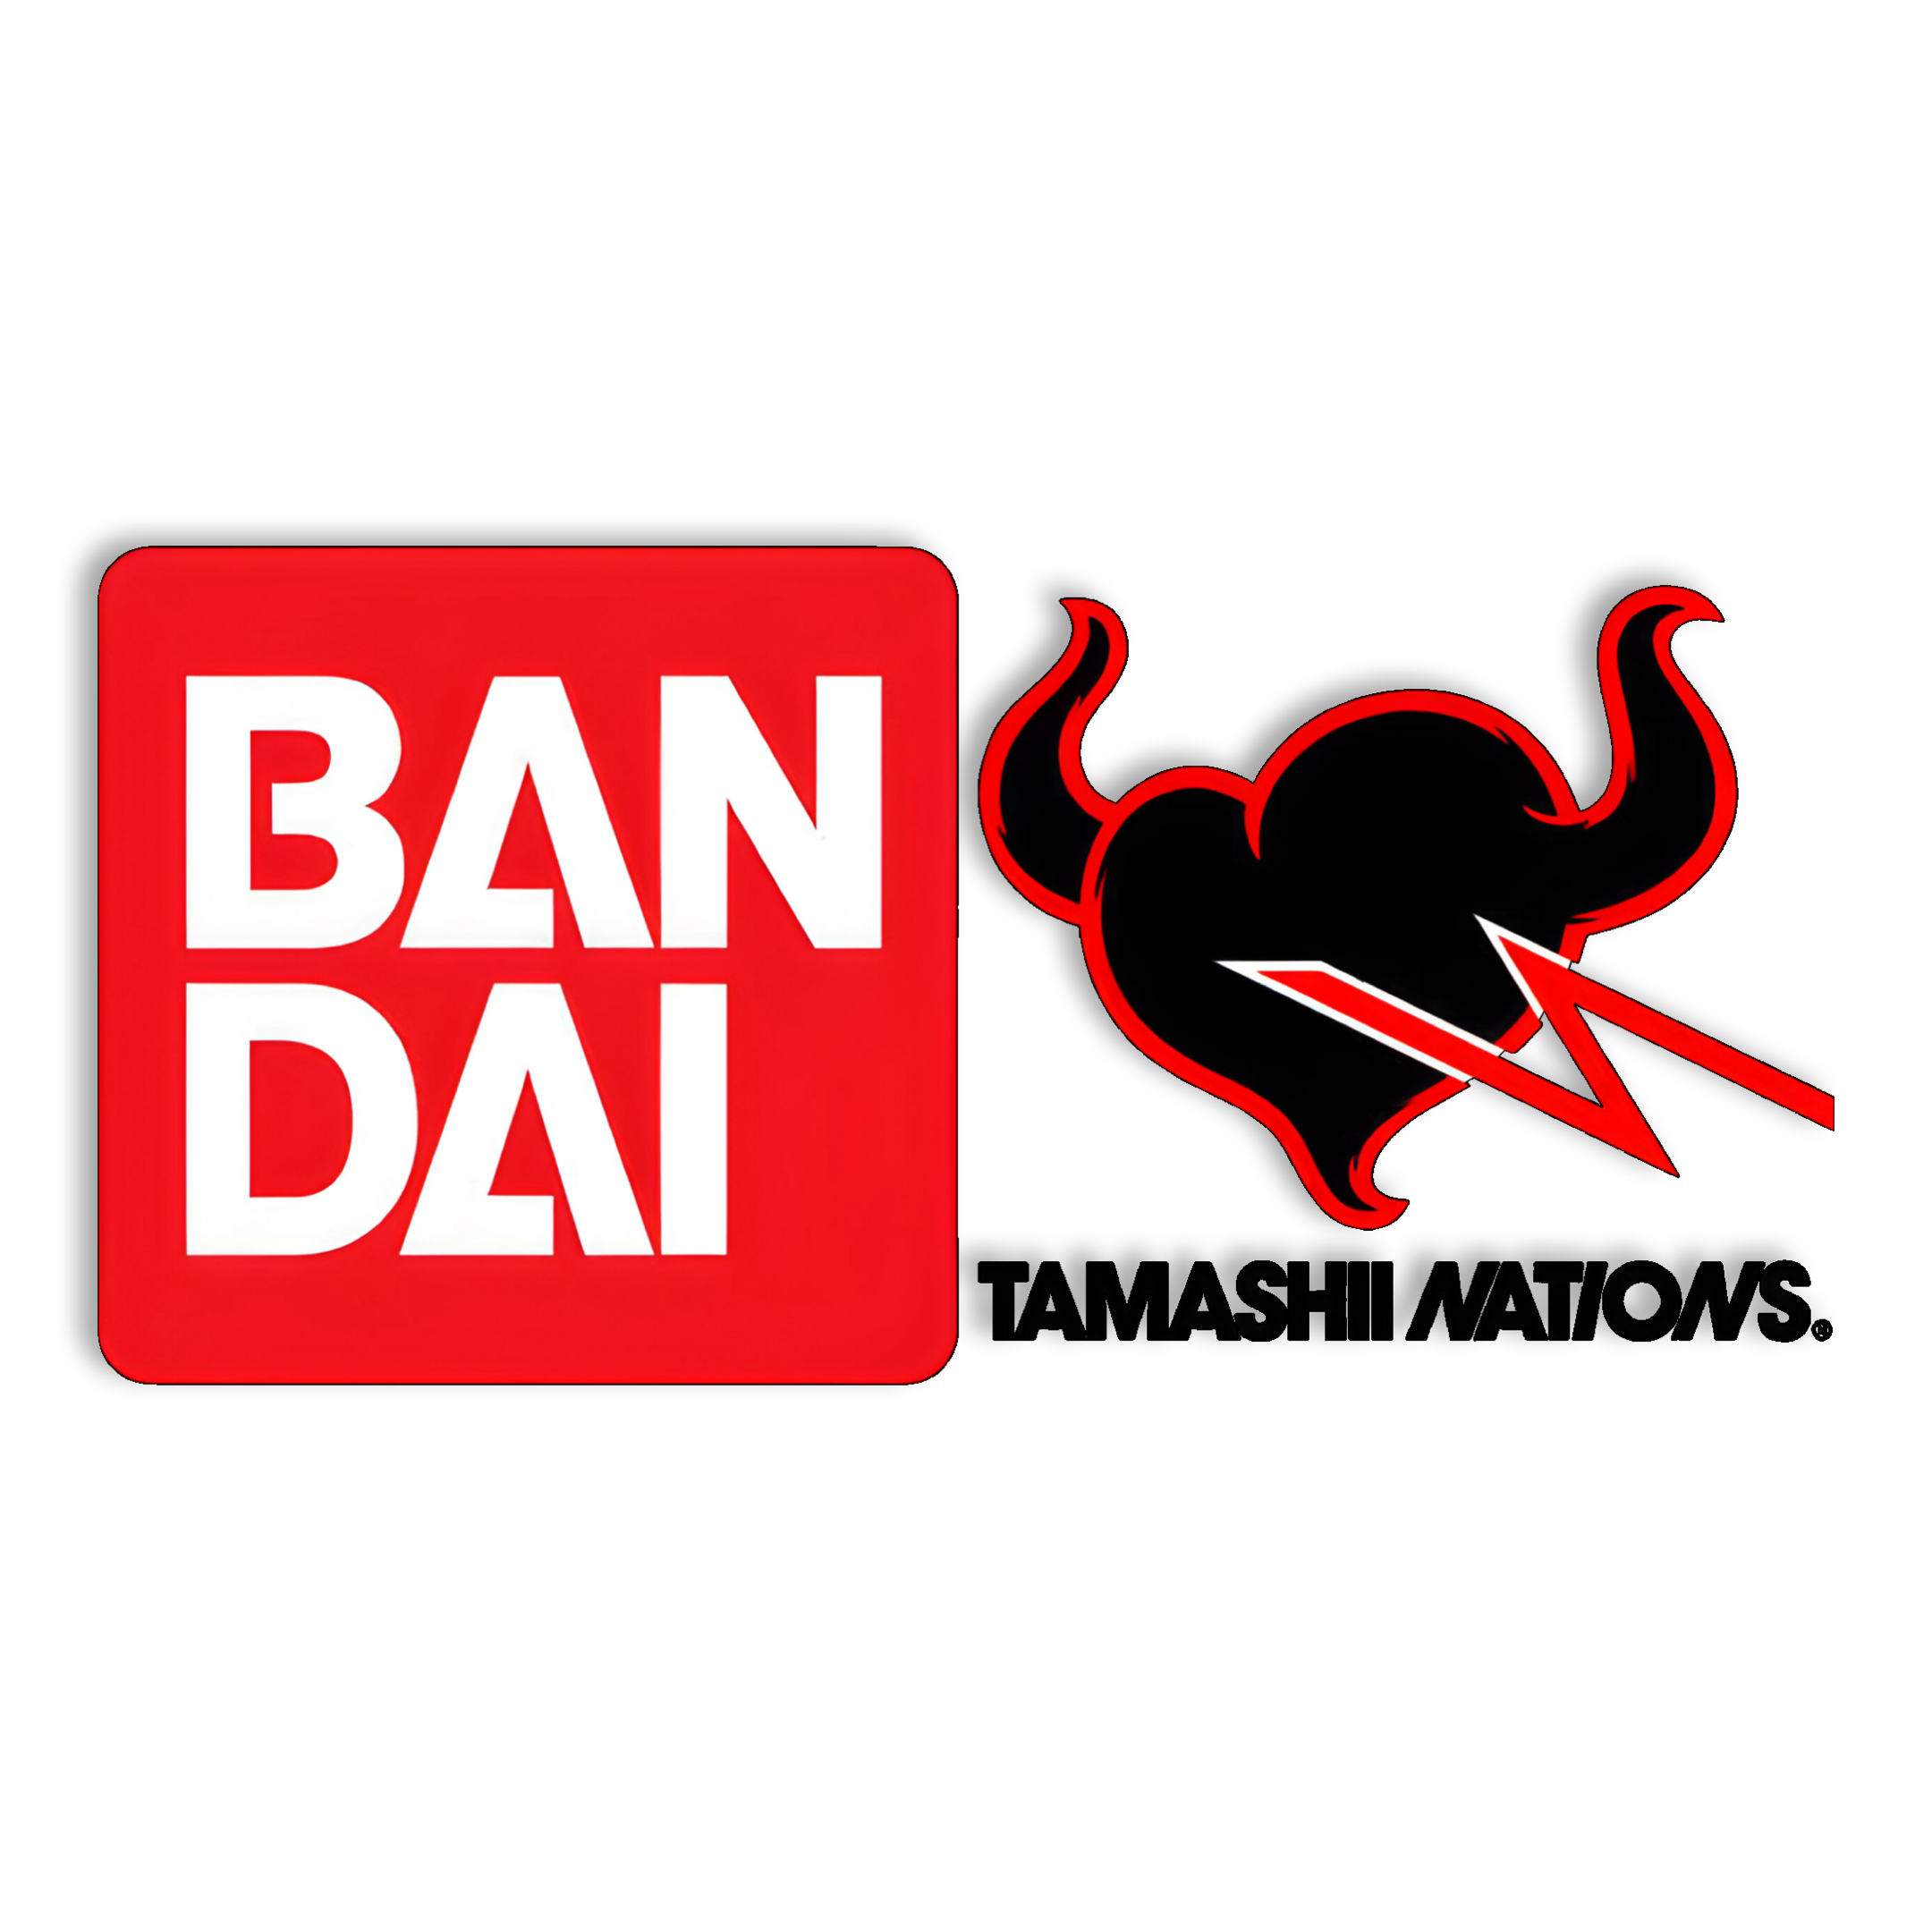 Bandai/Tamashii Nations